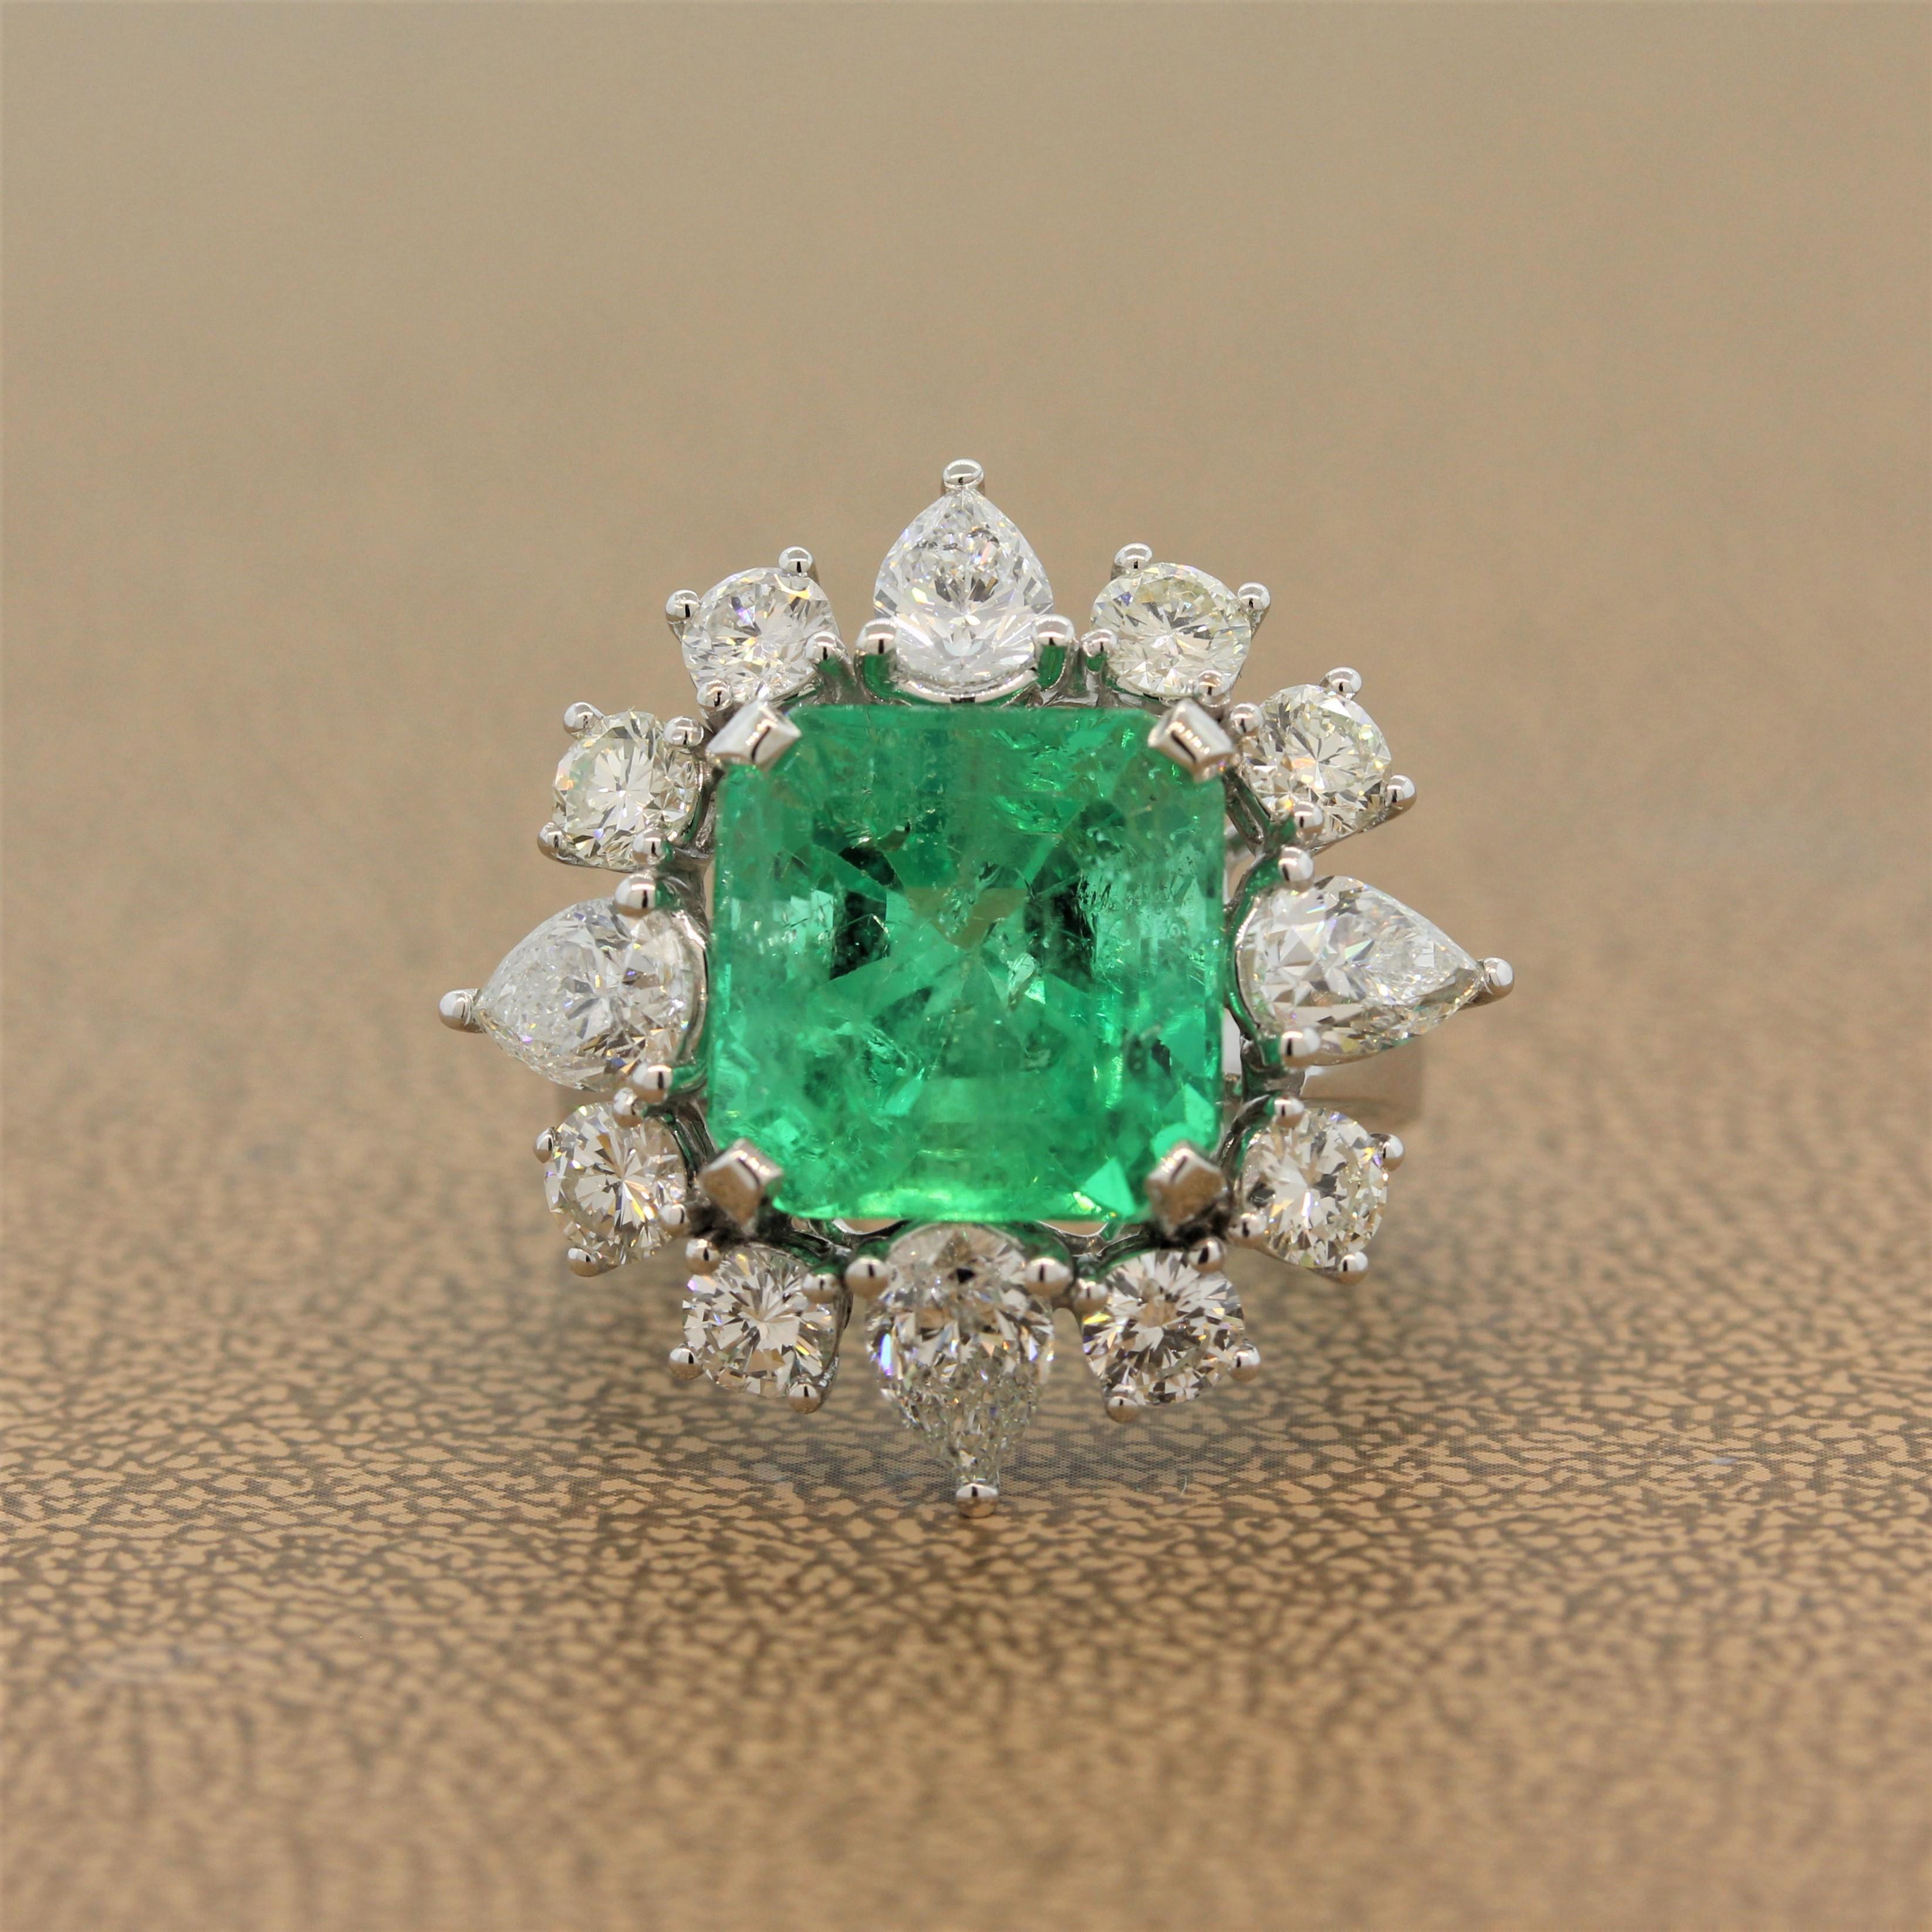 Ein prächtiger Smaragdring mit einem 8,14 Karat schweren Smaragd im Smaragdschliff und einer üppigen, lebhaften Farbe. Der Edelstein wird von großen Diamanten im Birnen- und Rundschliff von insgesamt 3,45 Karat umrahmt. Sie sind in eine